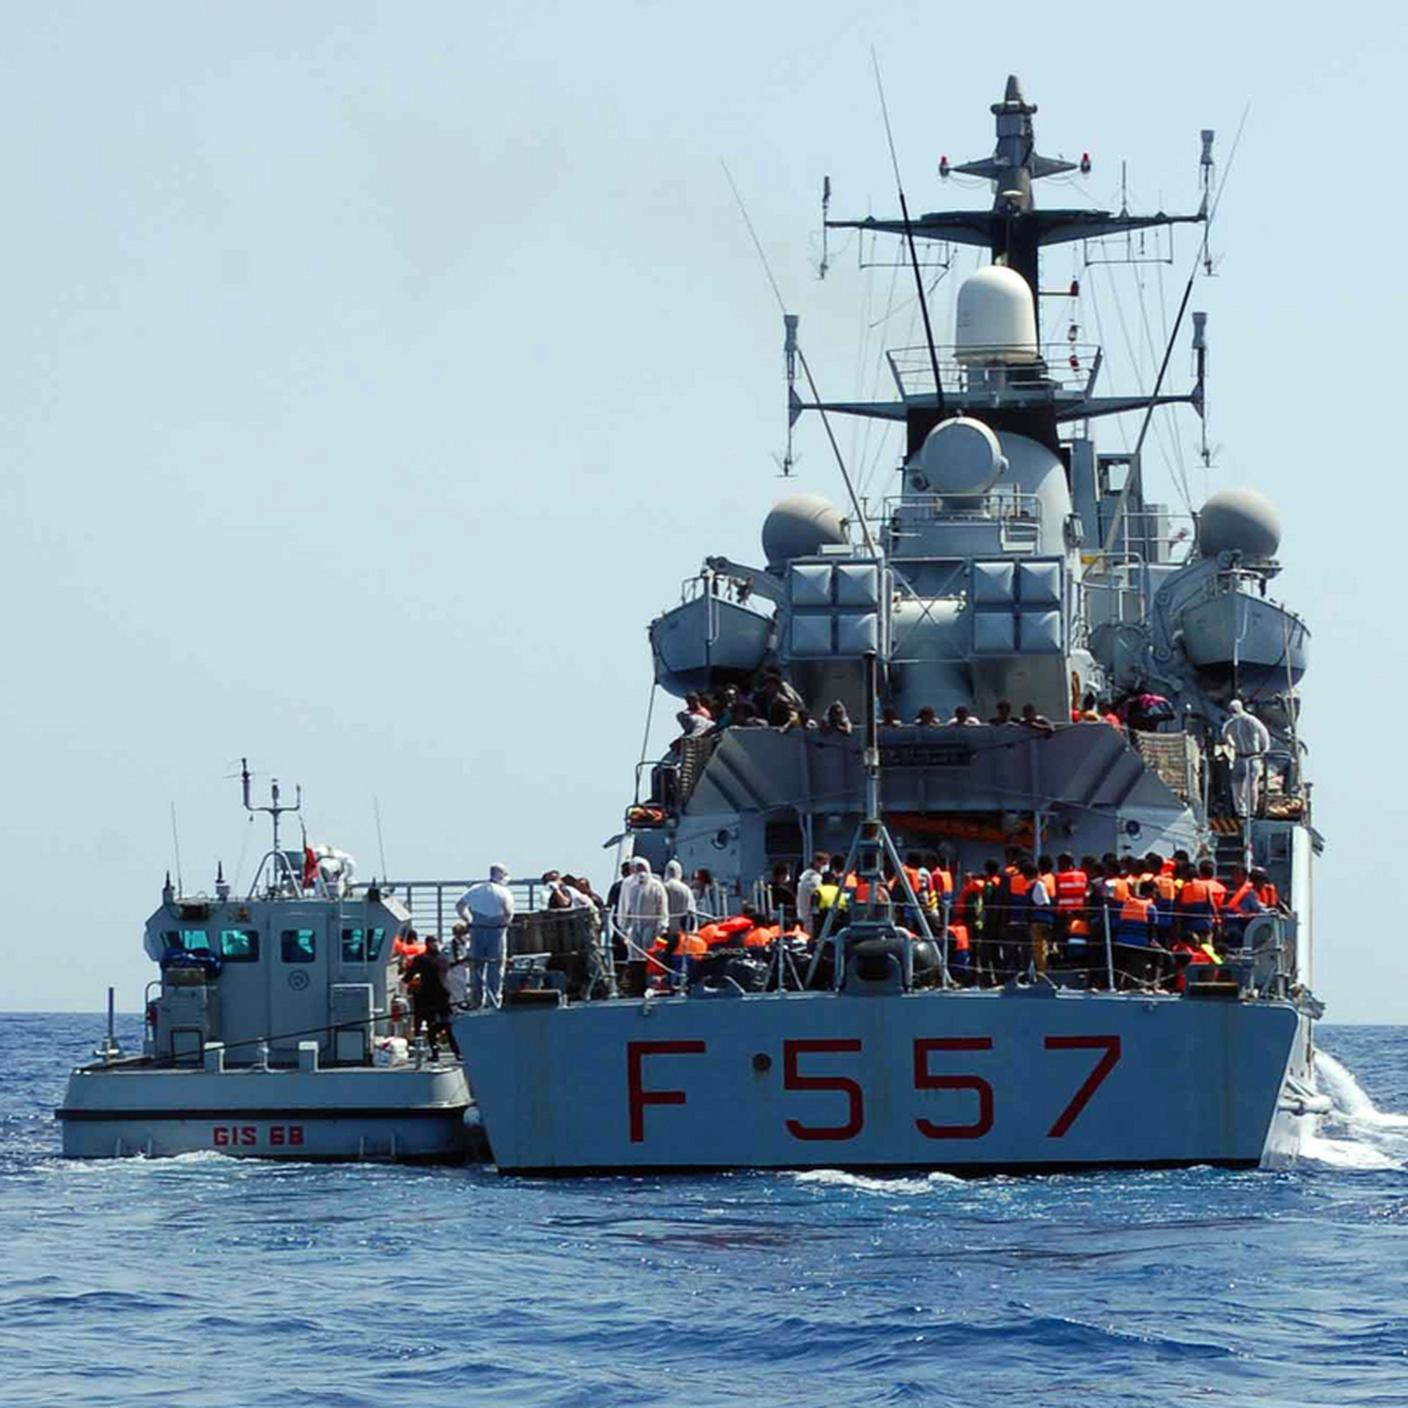 Una nave militare italiana carica di migranti salvati da un barcone